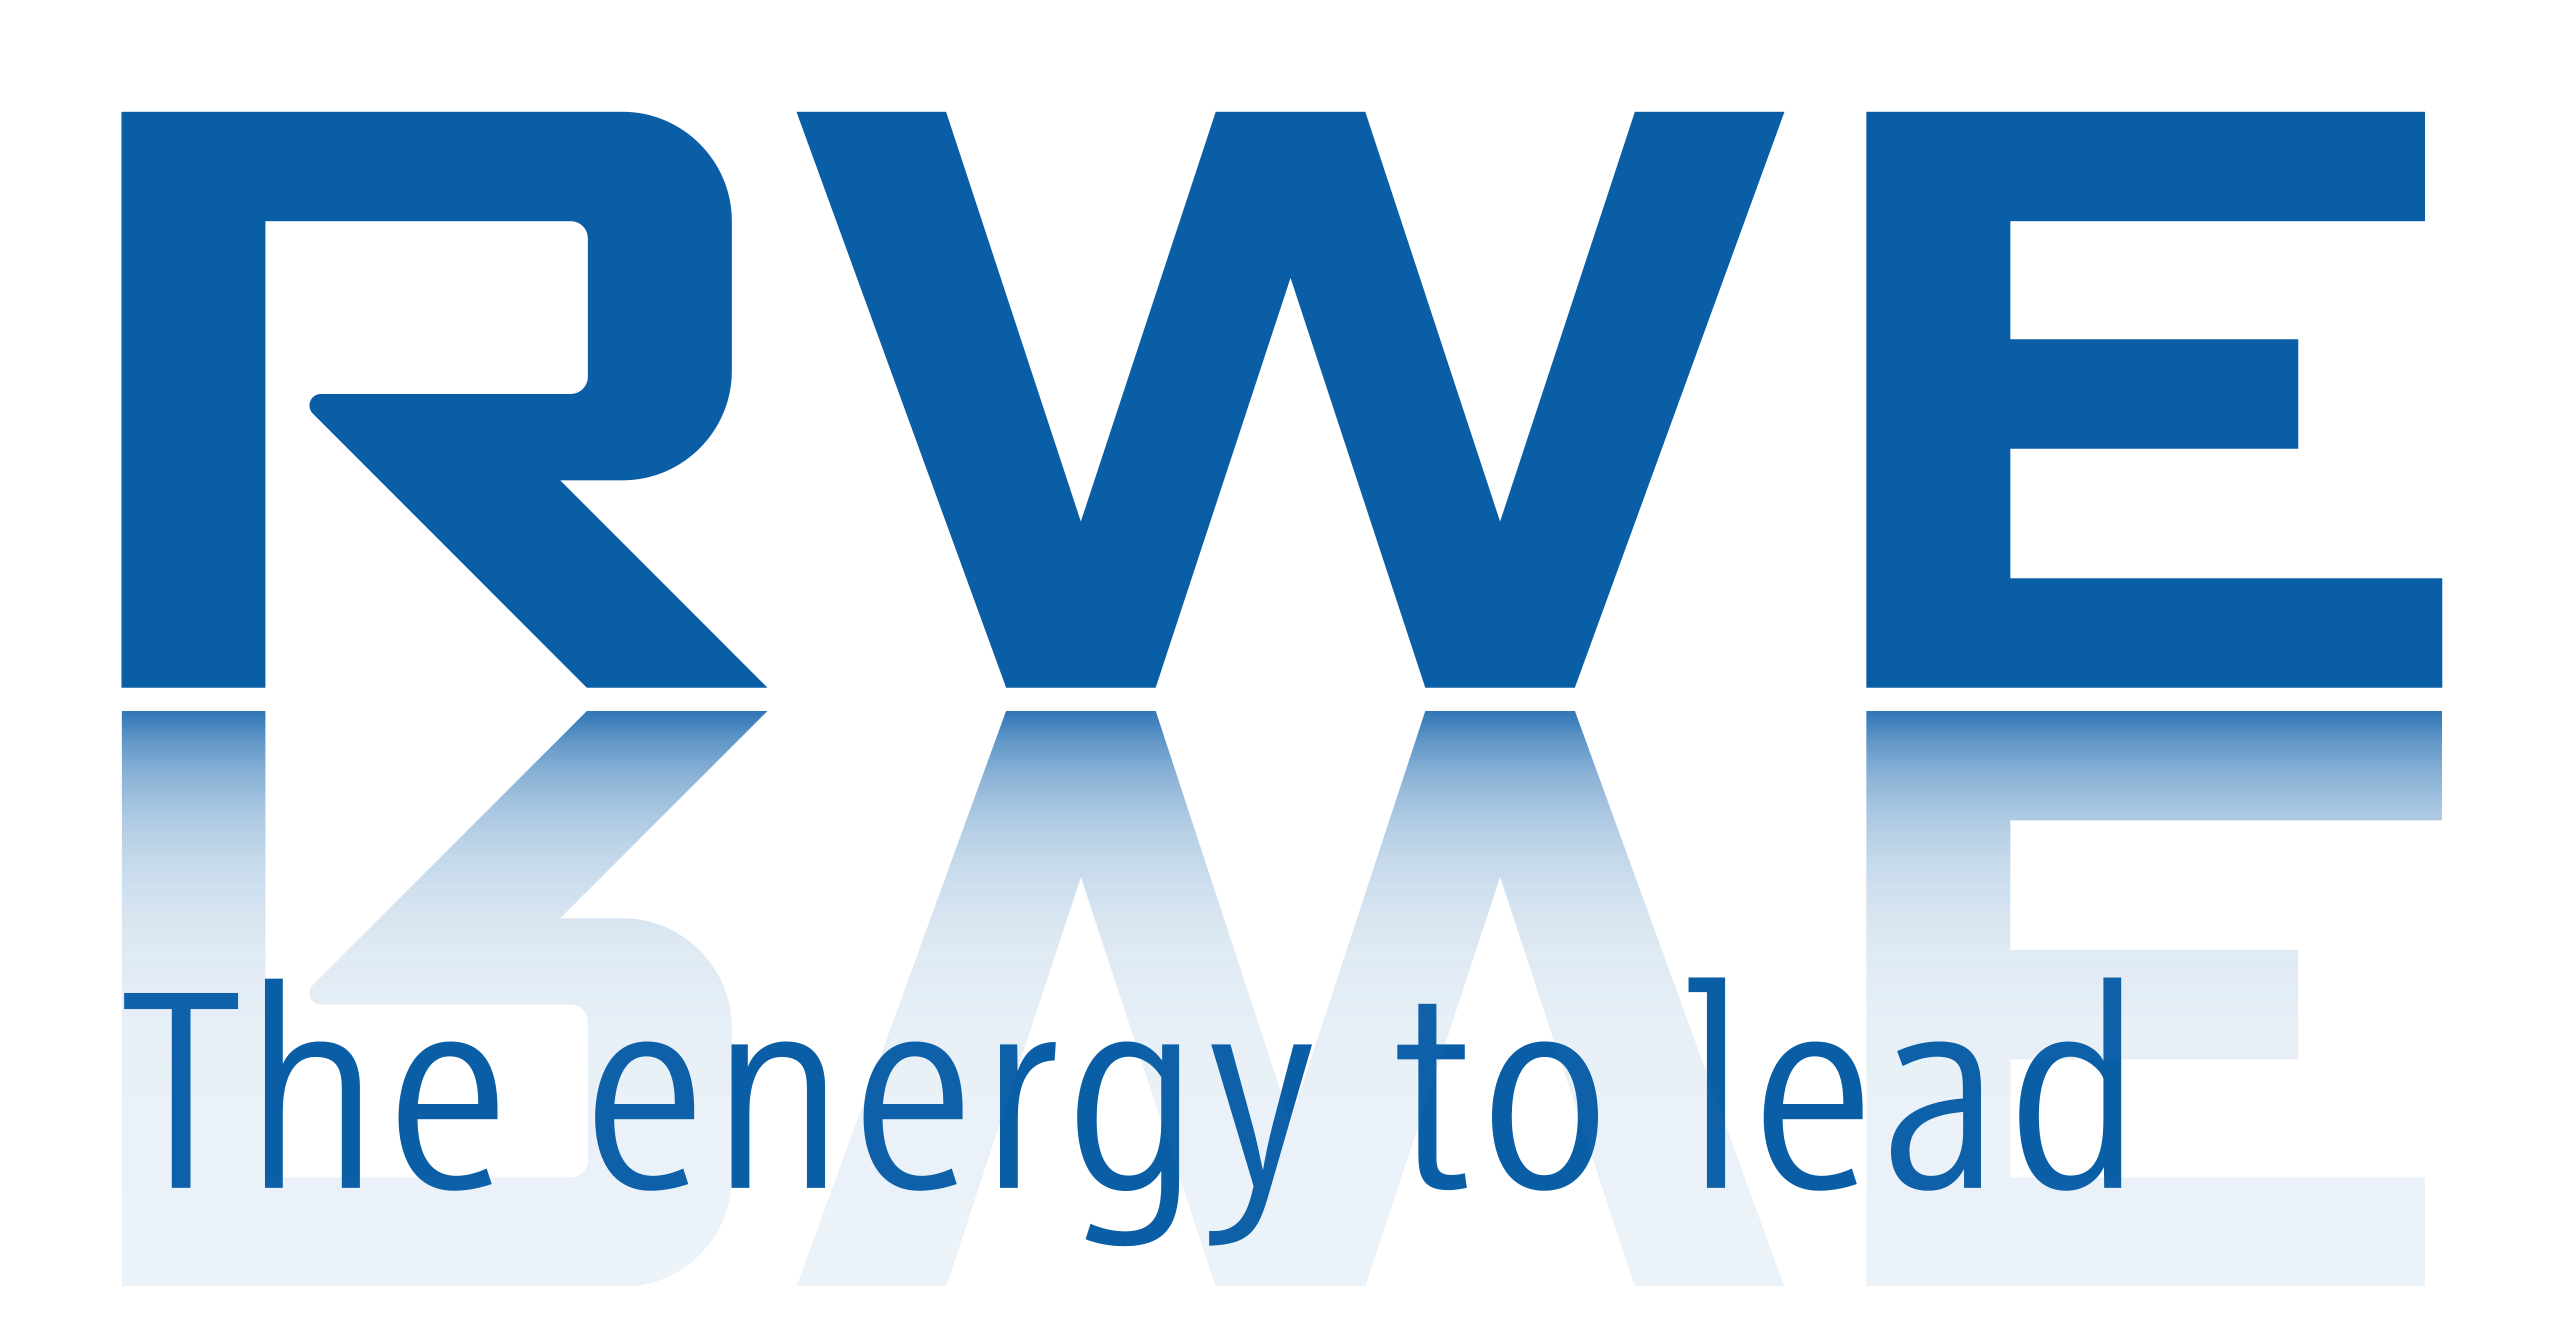 Energy.exe logo